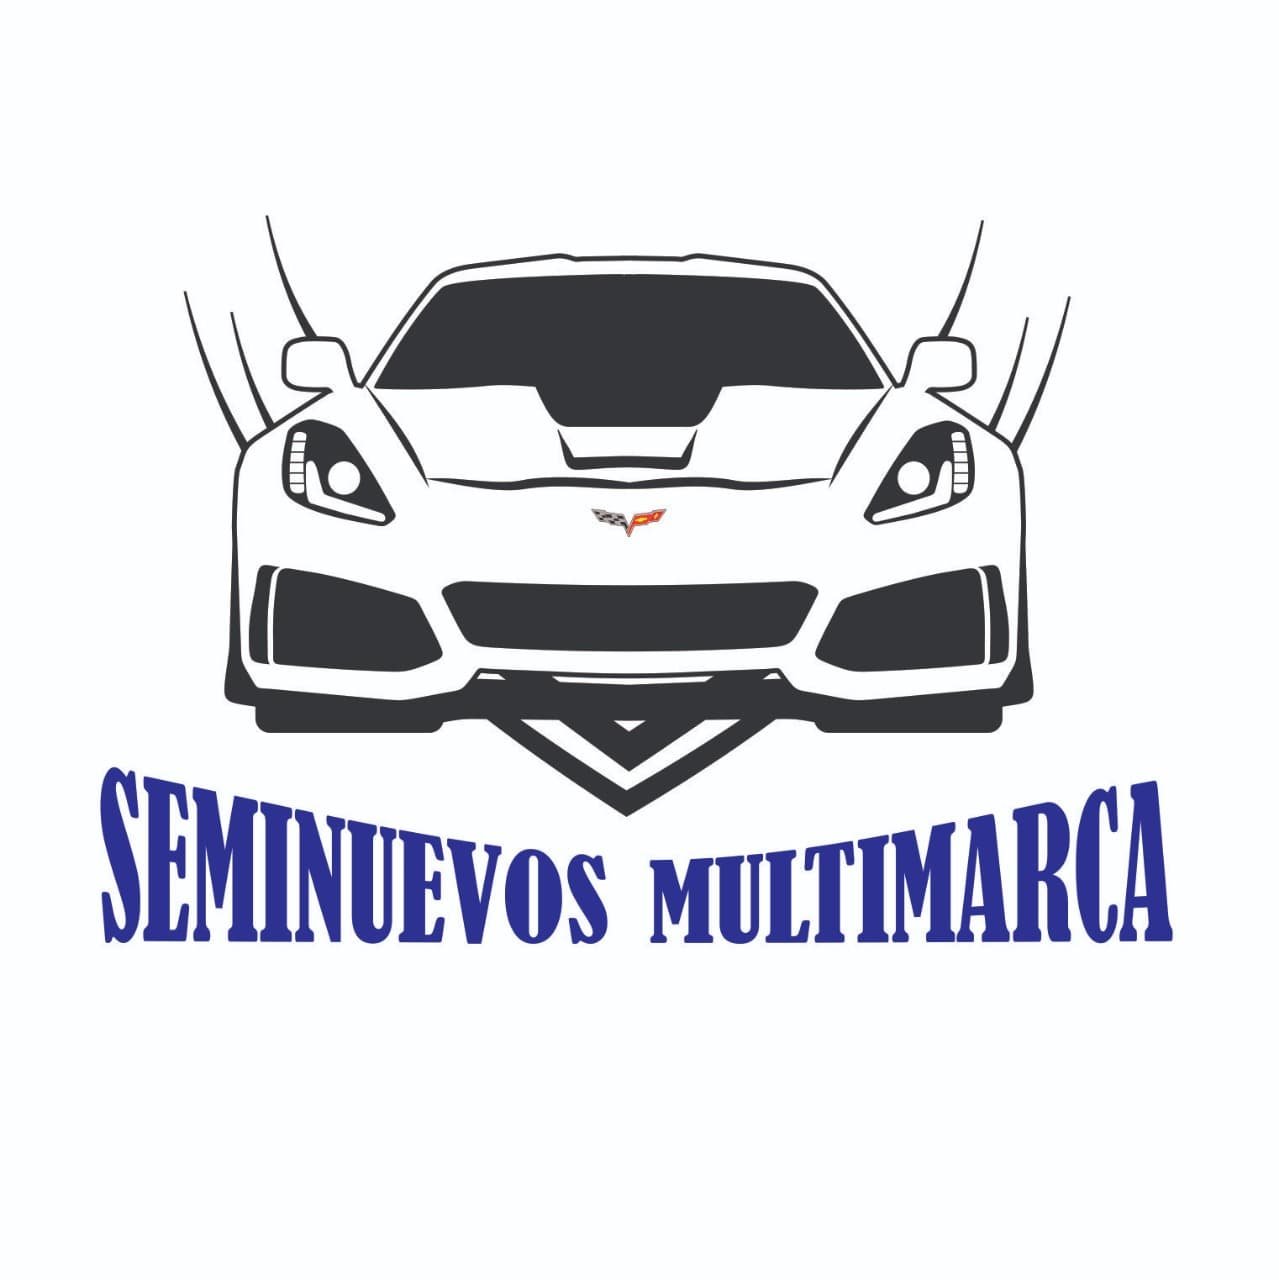 AGENCIA DE AUTOS SEMINUEVOS UBICADO EN HERMOSILLO SONORA - CEL. 6622-79-09-17